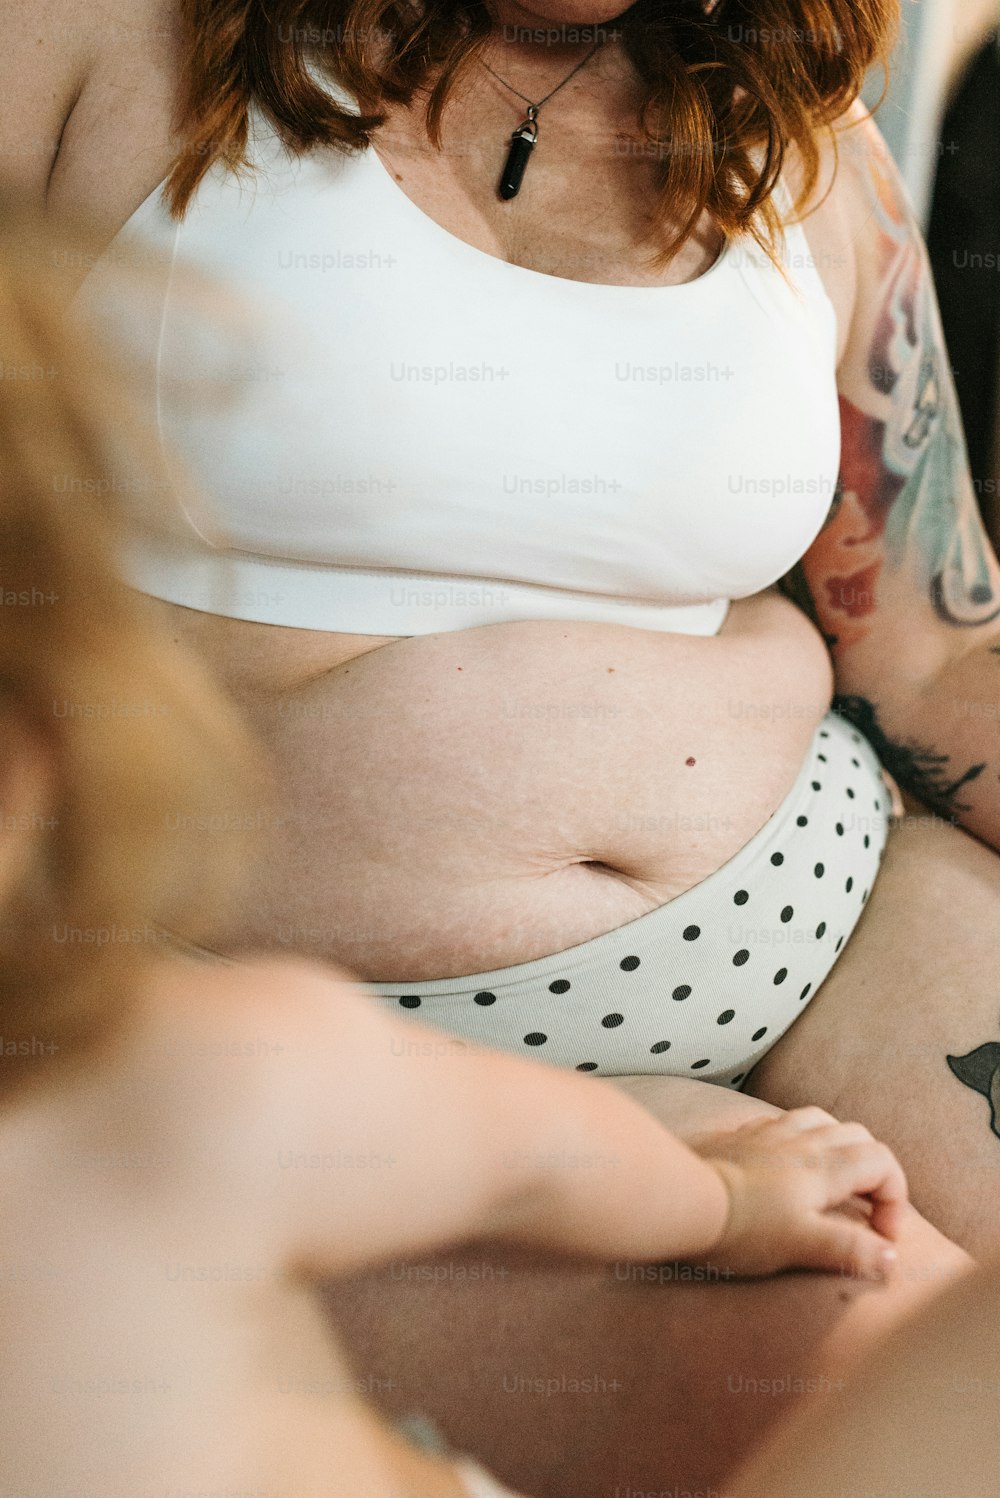 eine schwangere Frau mit Tätowierungen auf dem Bauch